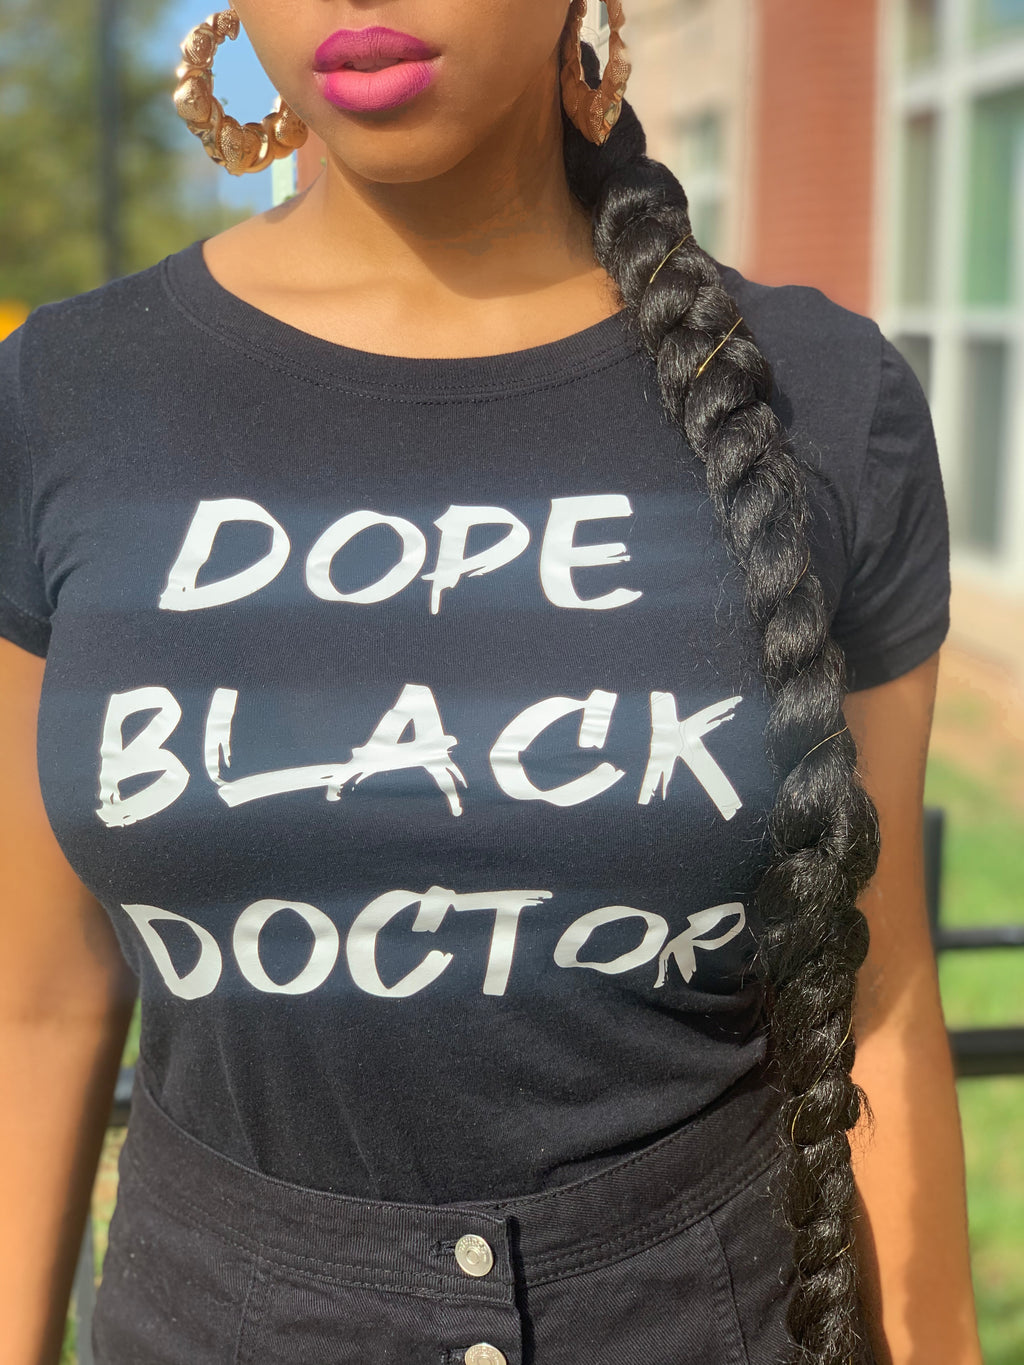 🚨NEW MERCH ALERT- DOPE BLACK DOCTOR Tee